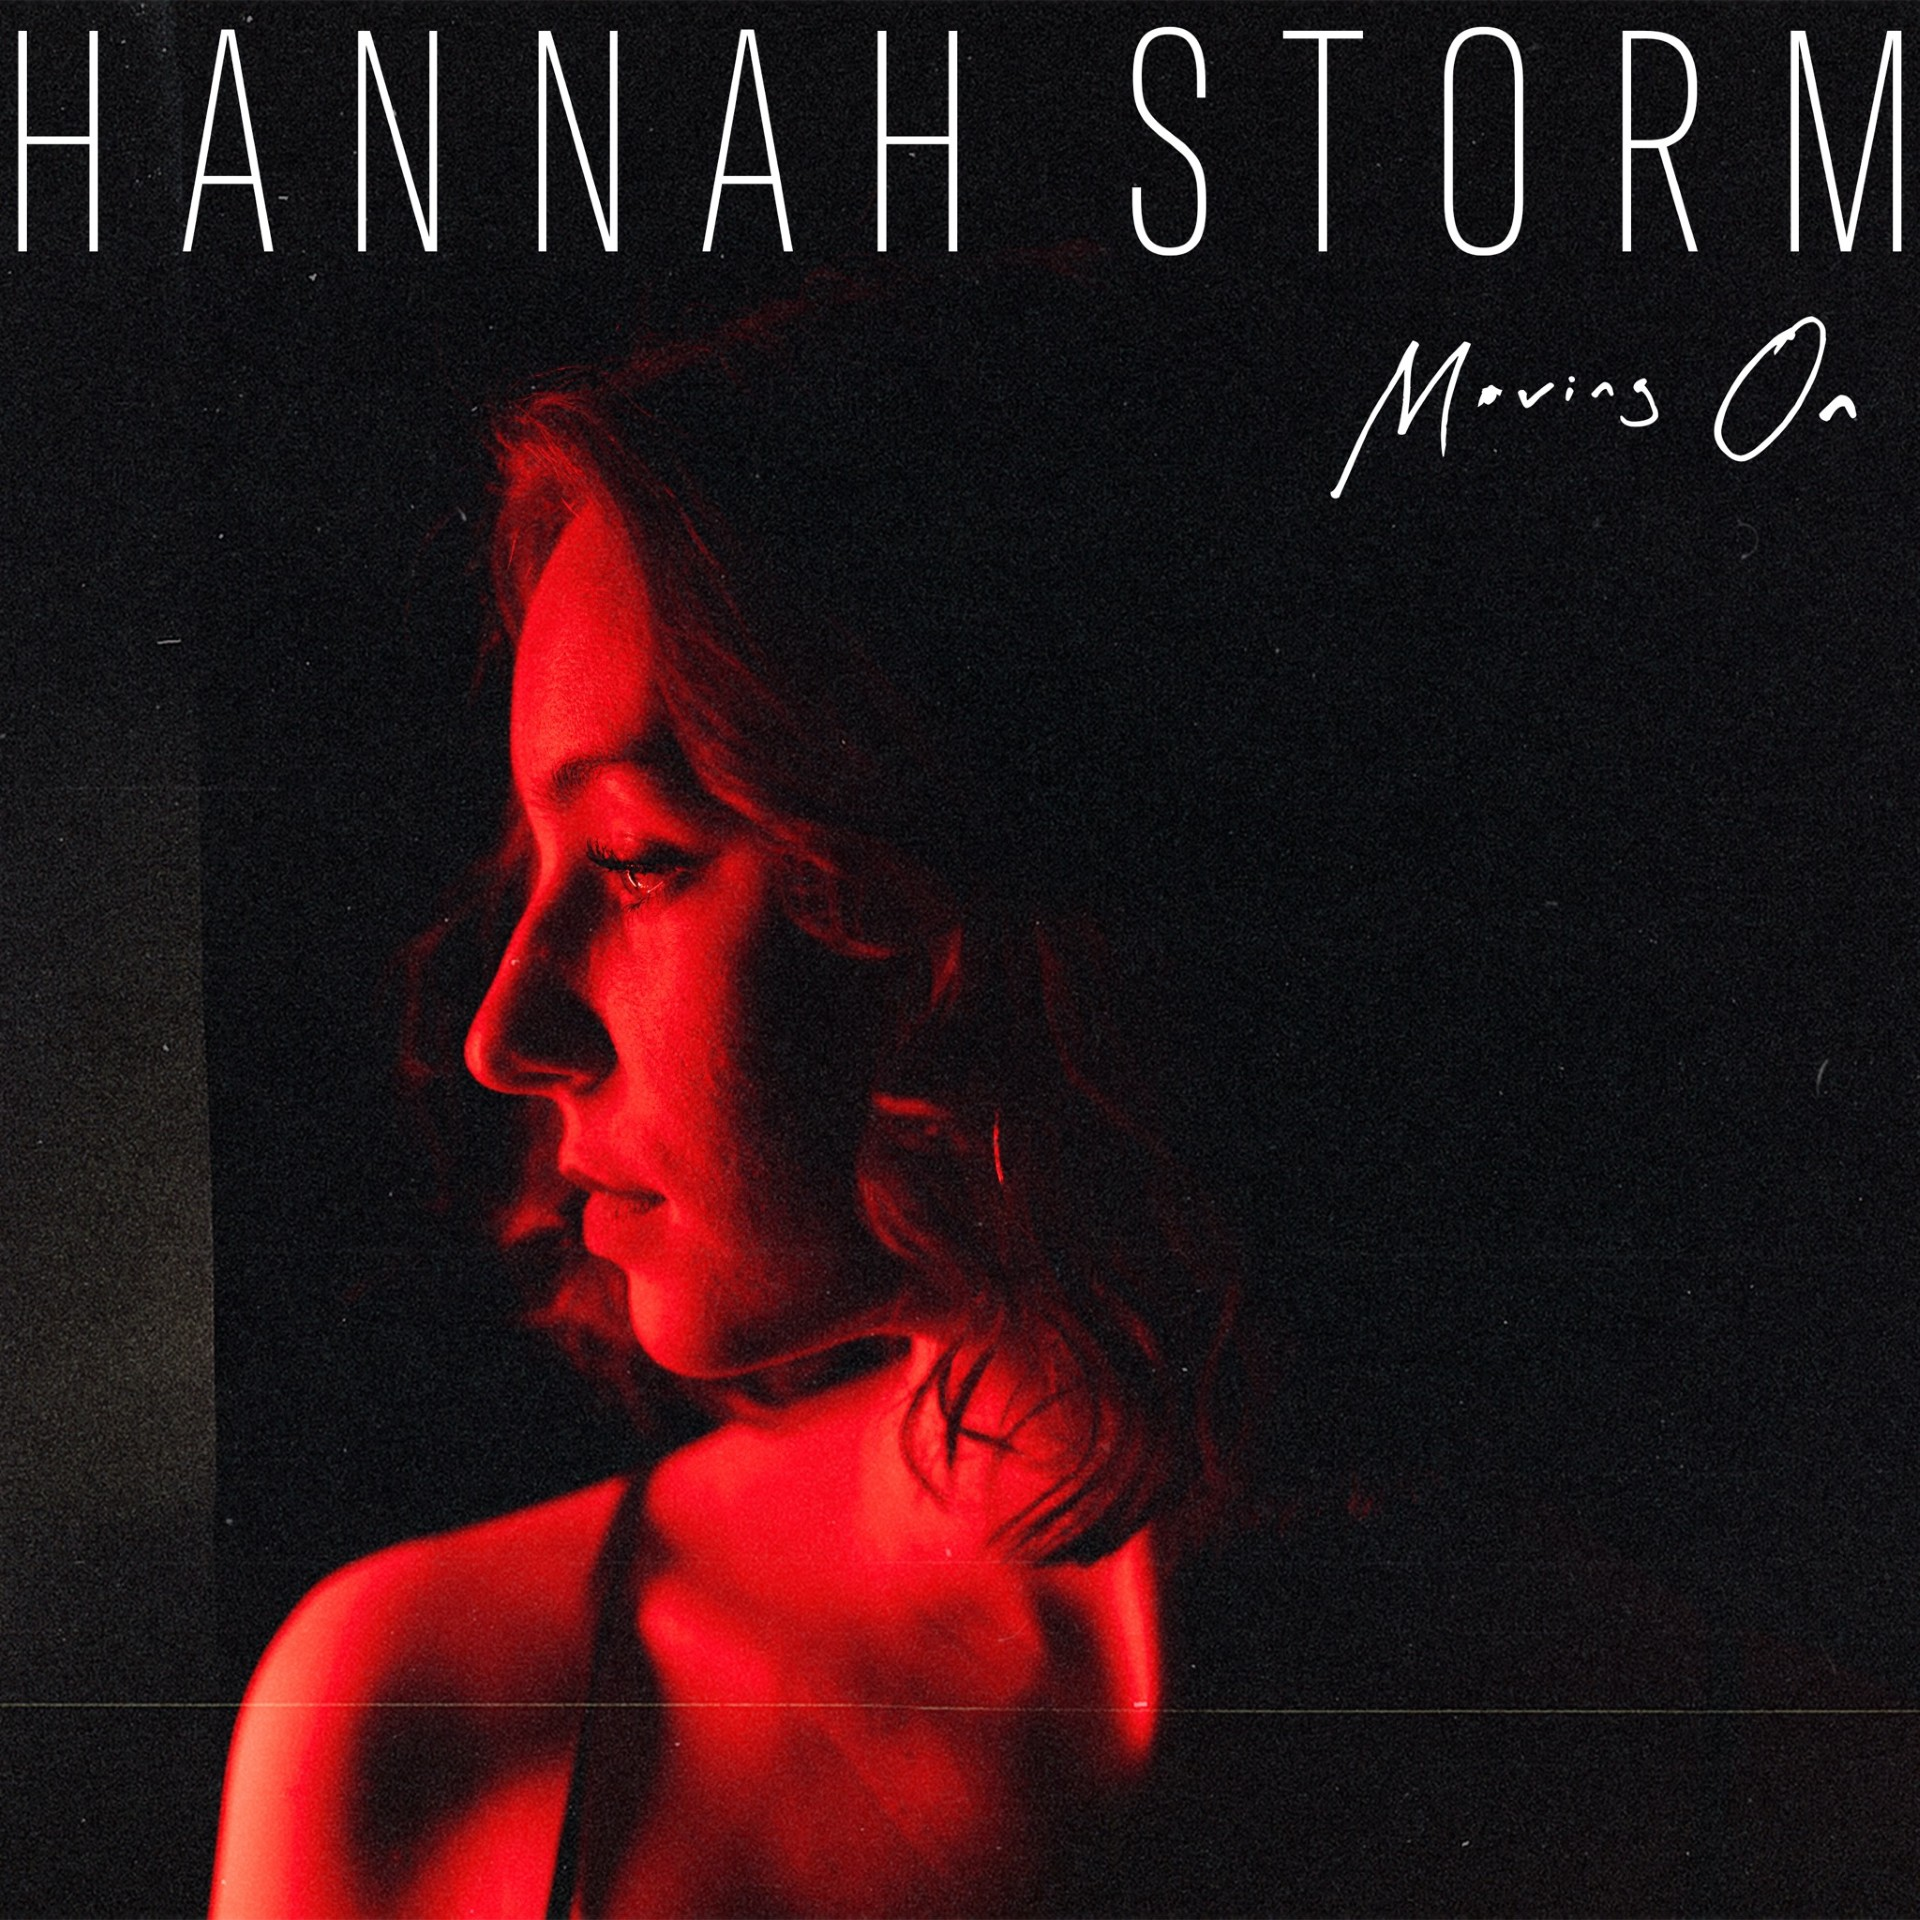 La conquista de Hannah Storm y “Moving On” el hit que rompio internet tras volverse viral con serie de Netflix Midsummer Night.